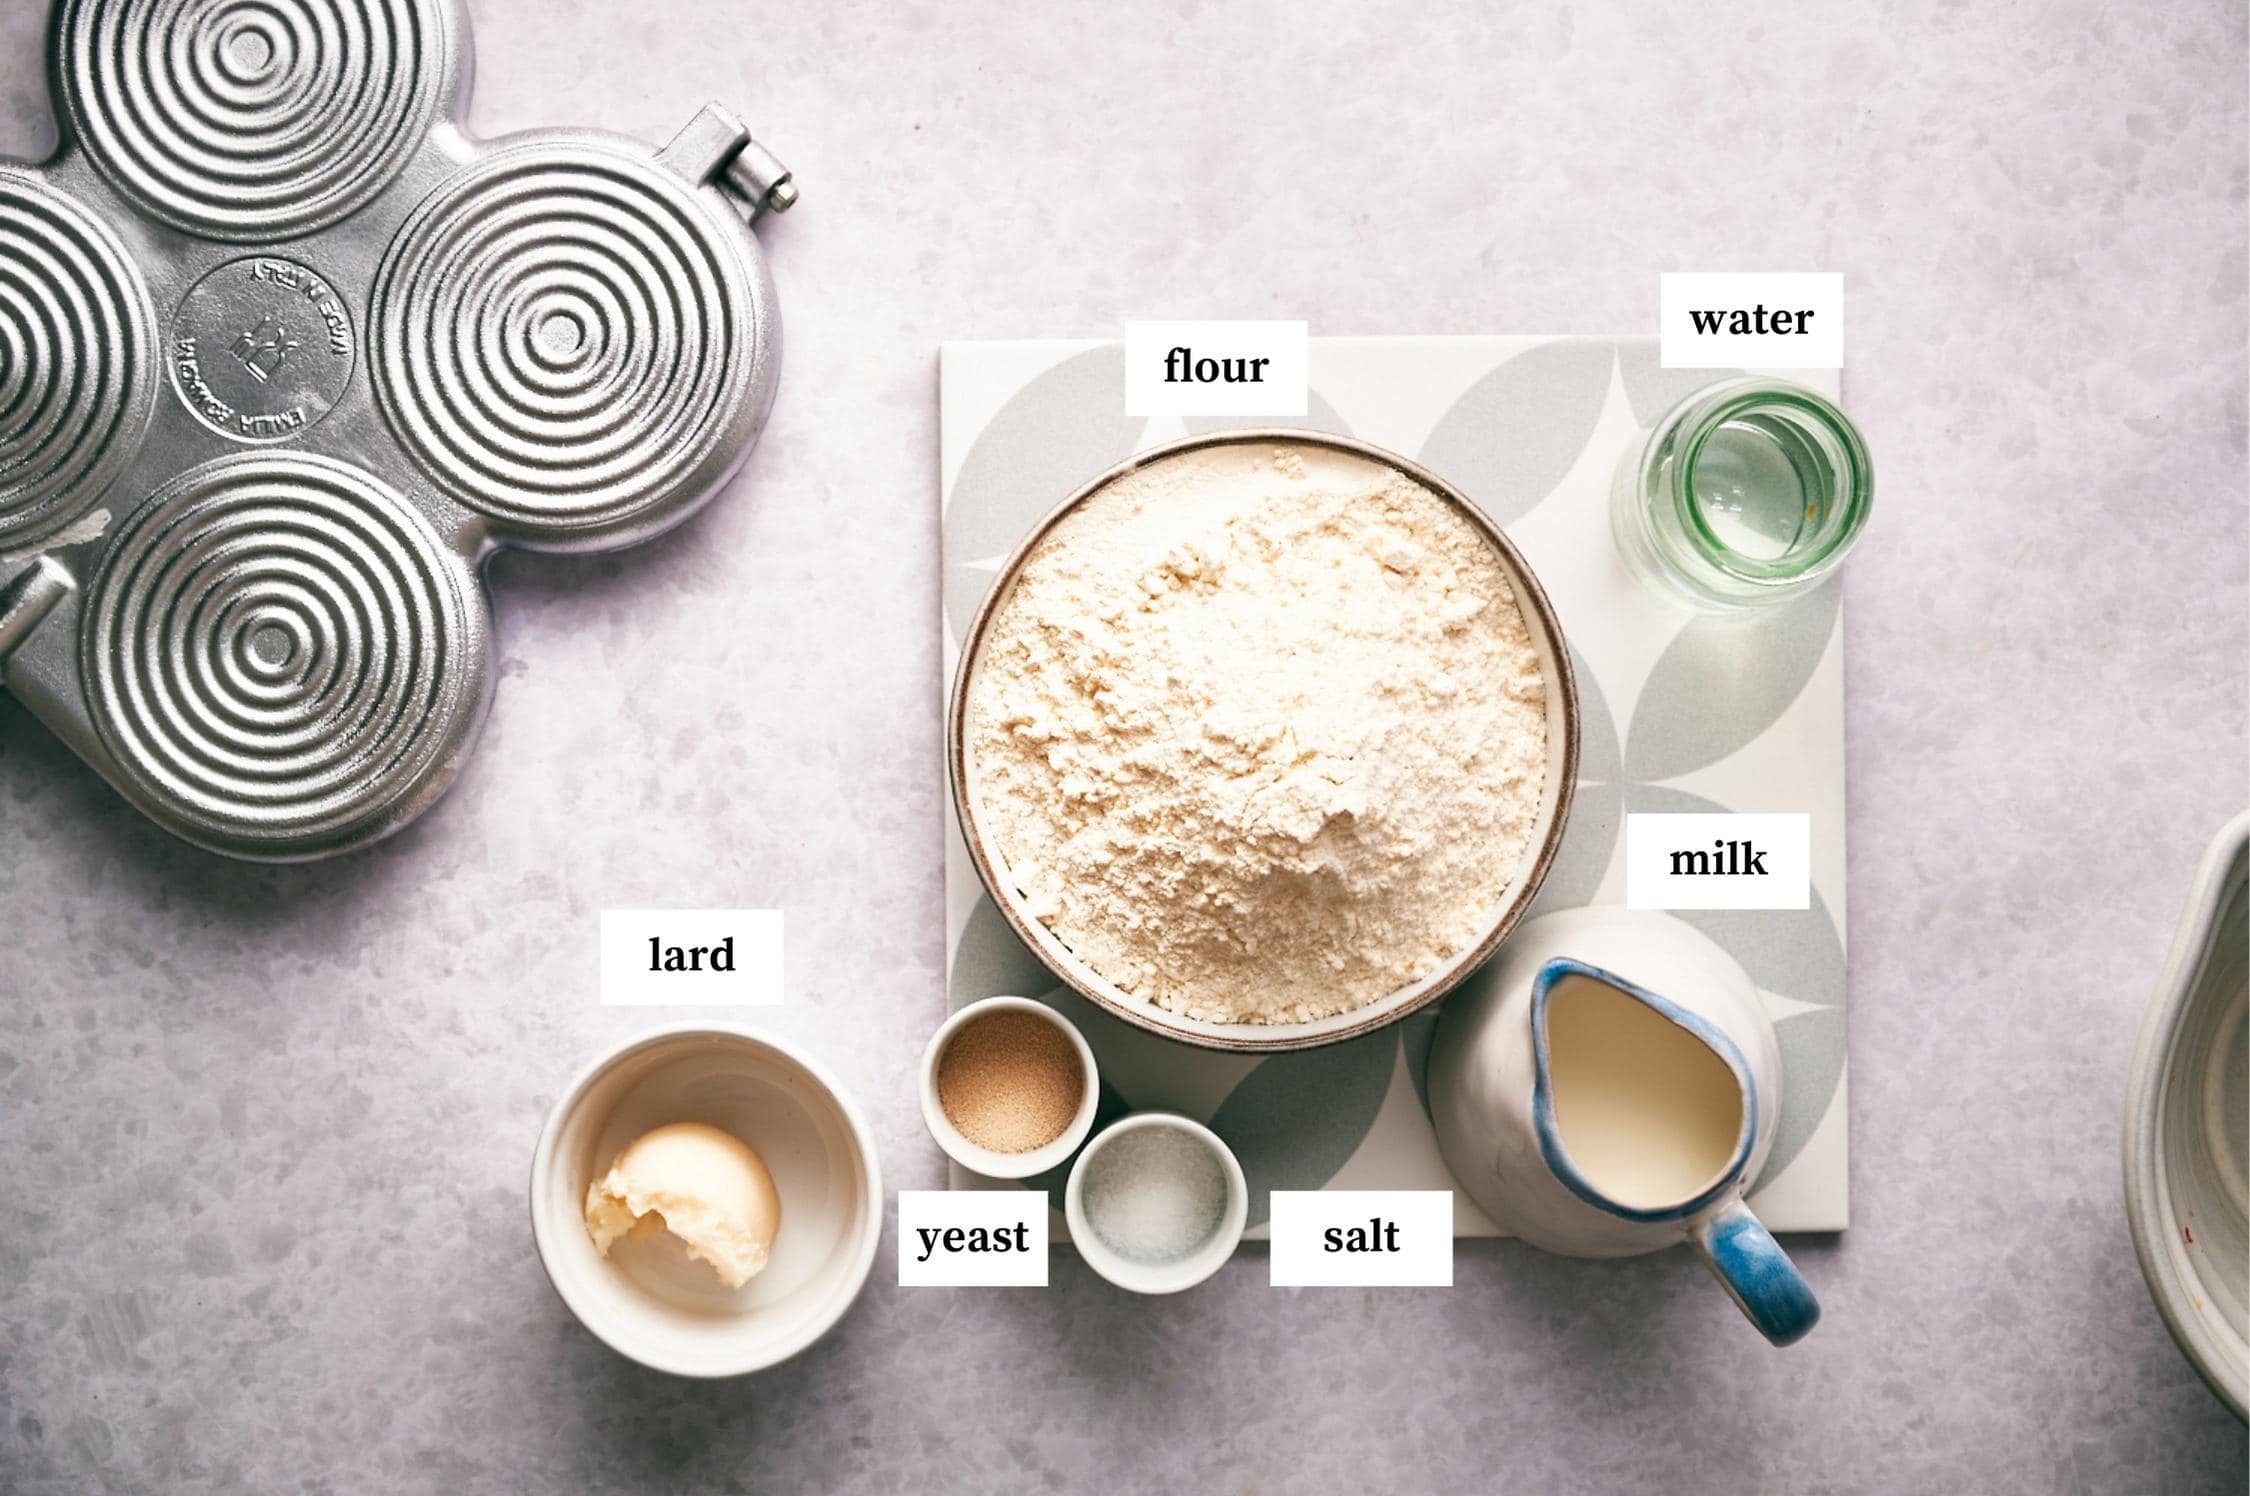 Ingredients for Tigelle Foccaccine Bread: lard, flour, water, milk, salt and yeast. 